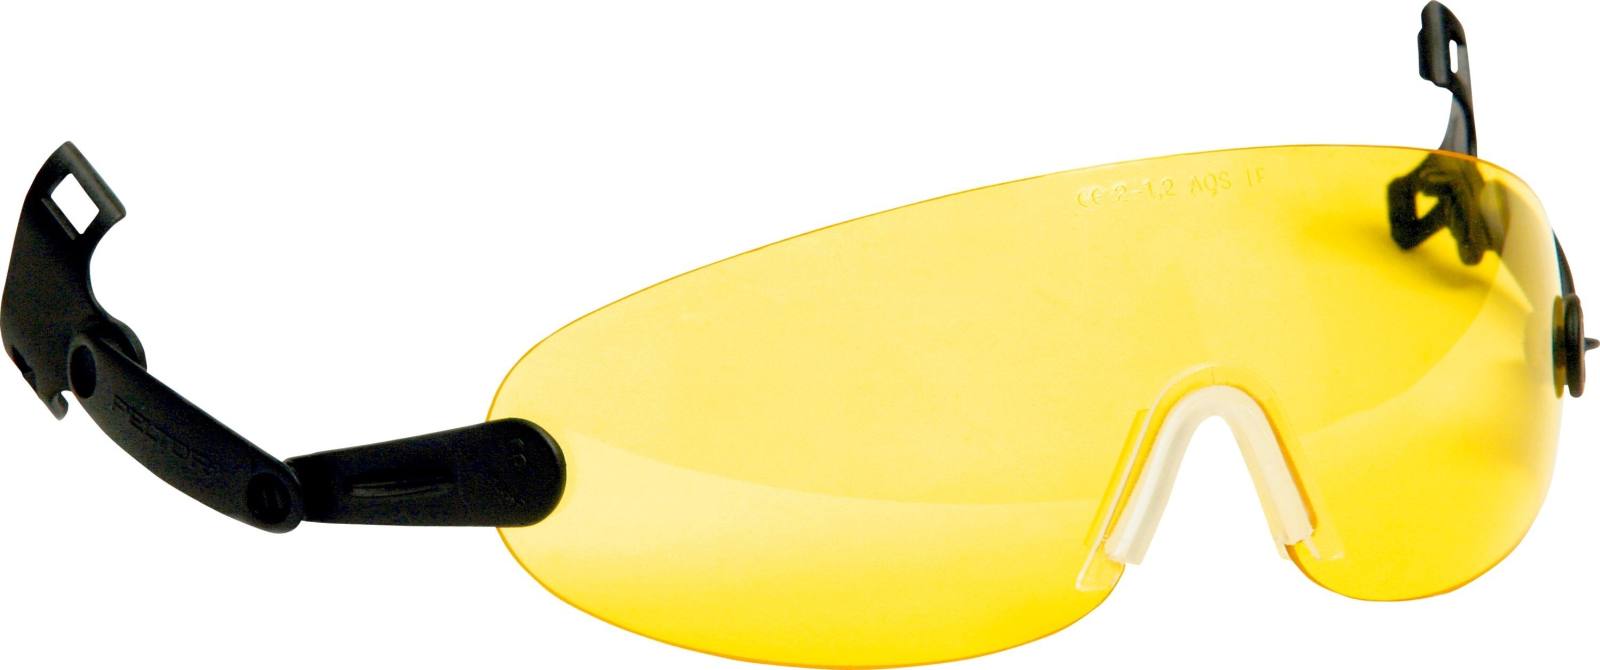 Lunettes de protection intégrables 3M pour casque de sécurité, jaune, V9A